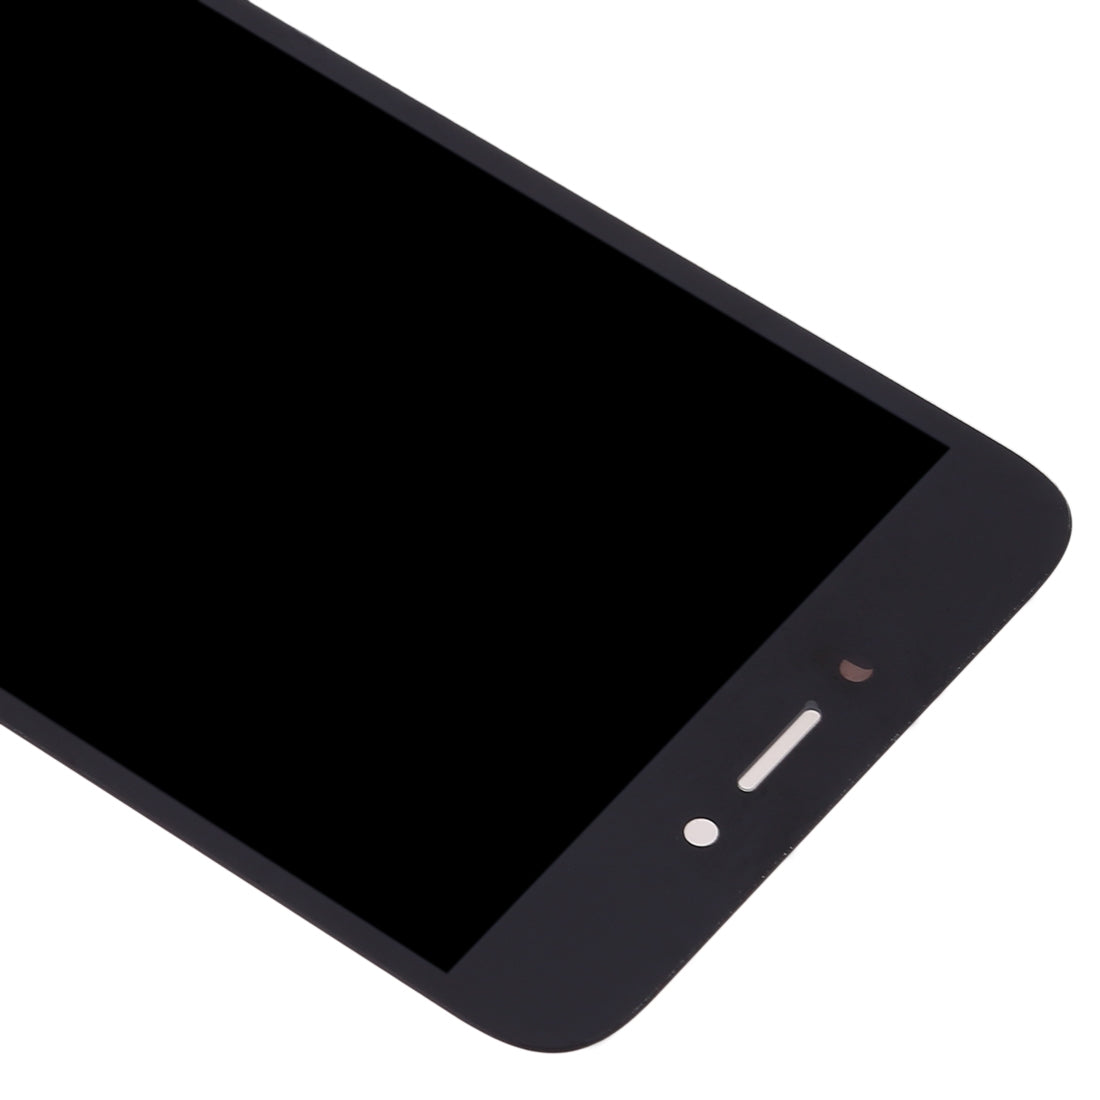 Pantalla LCD + Tactil Digitalizador Xiaomi Redmi Go Negro